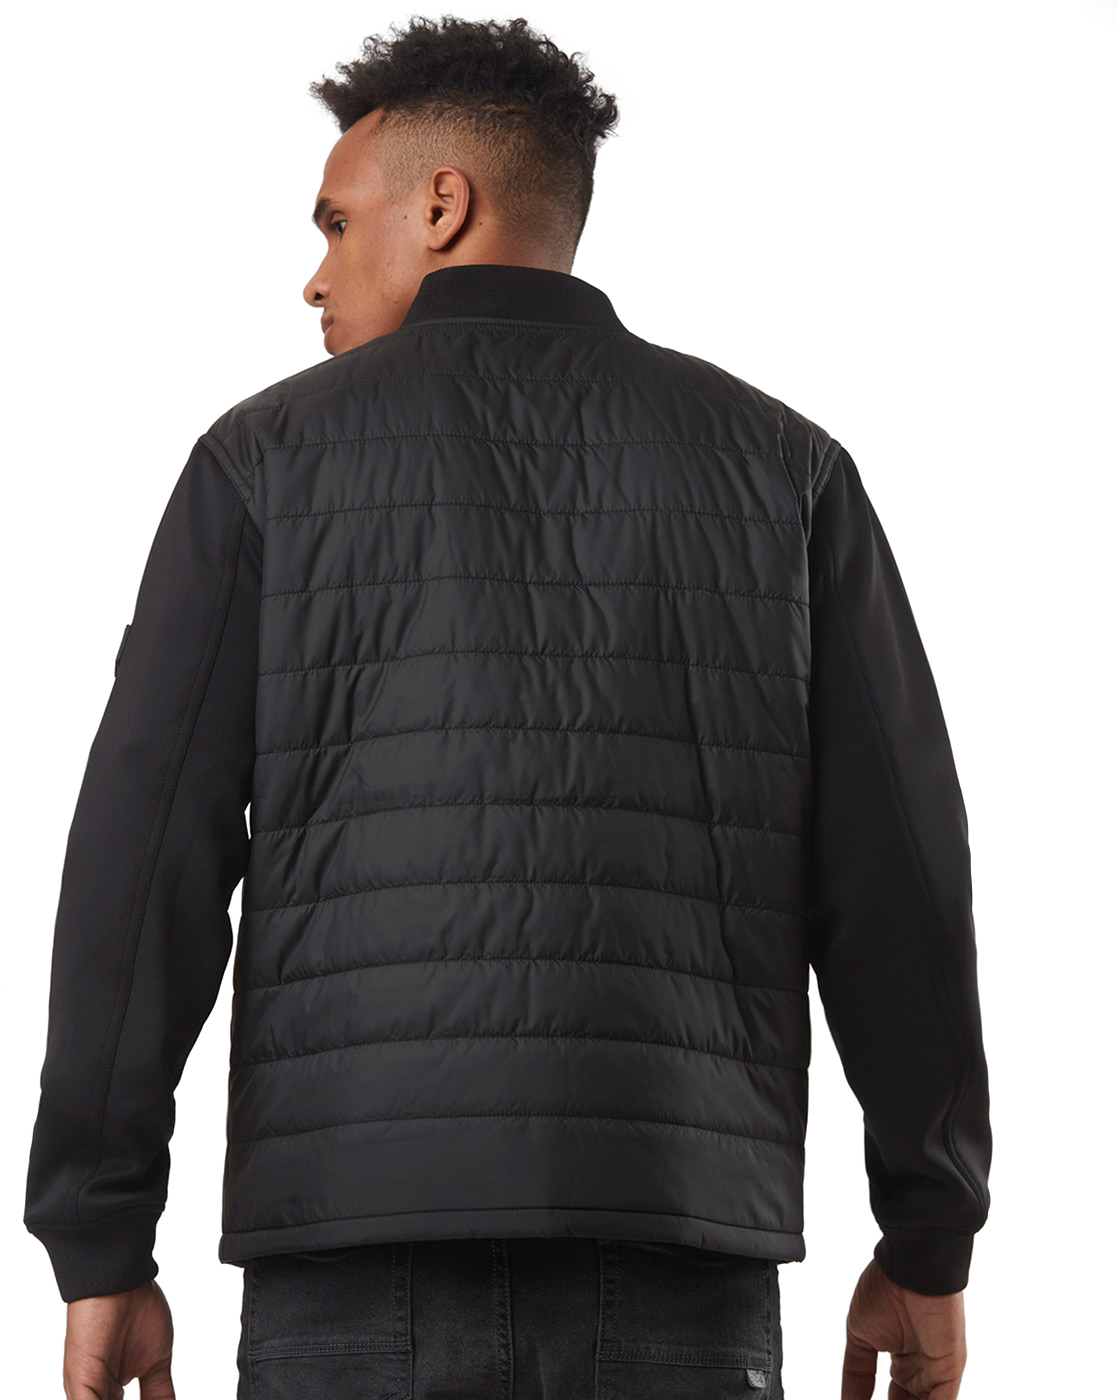 Buy Men Black Solid Full Sleeves Casual Jacket Online - 805561